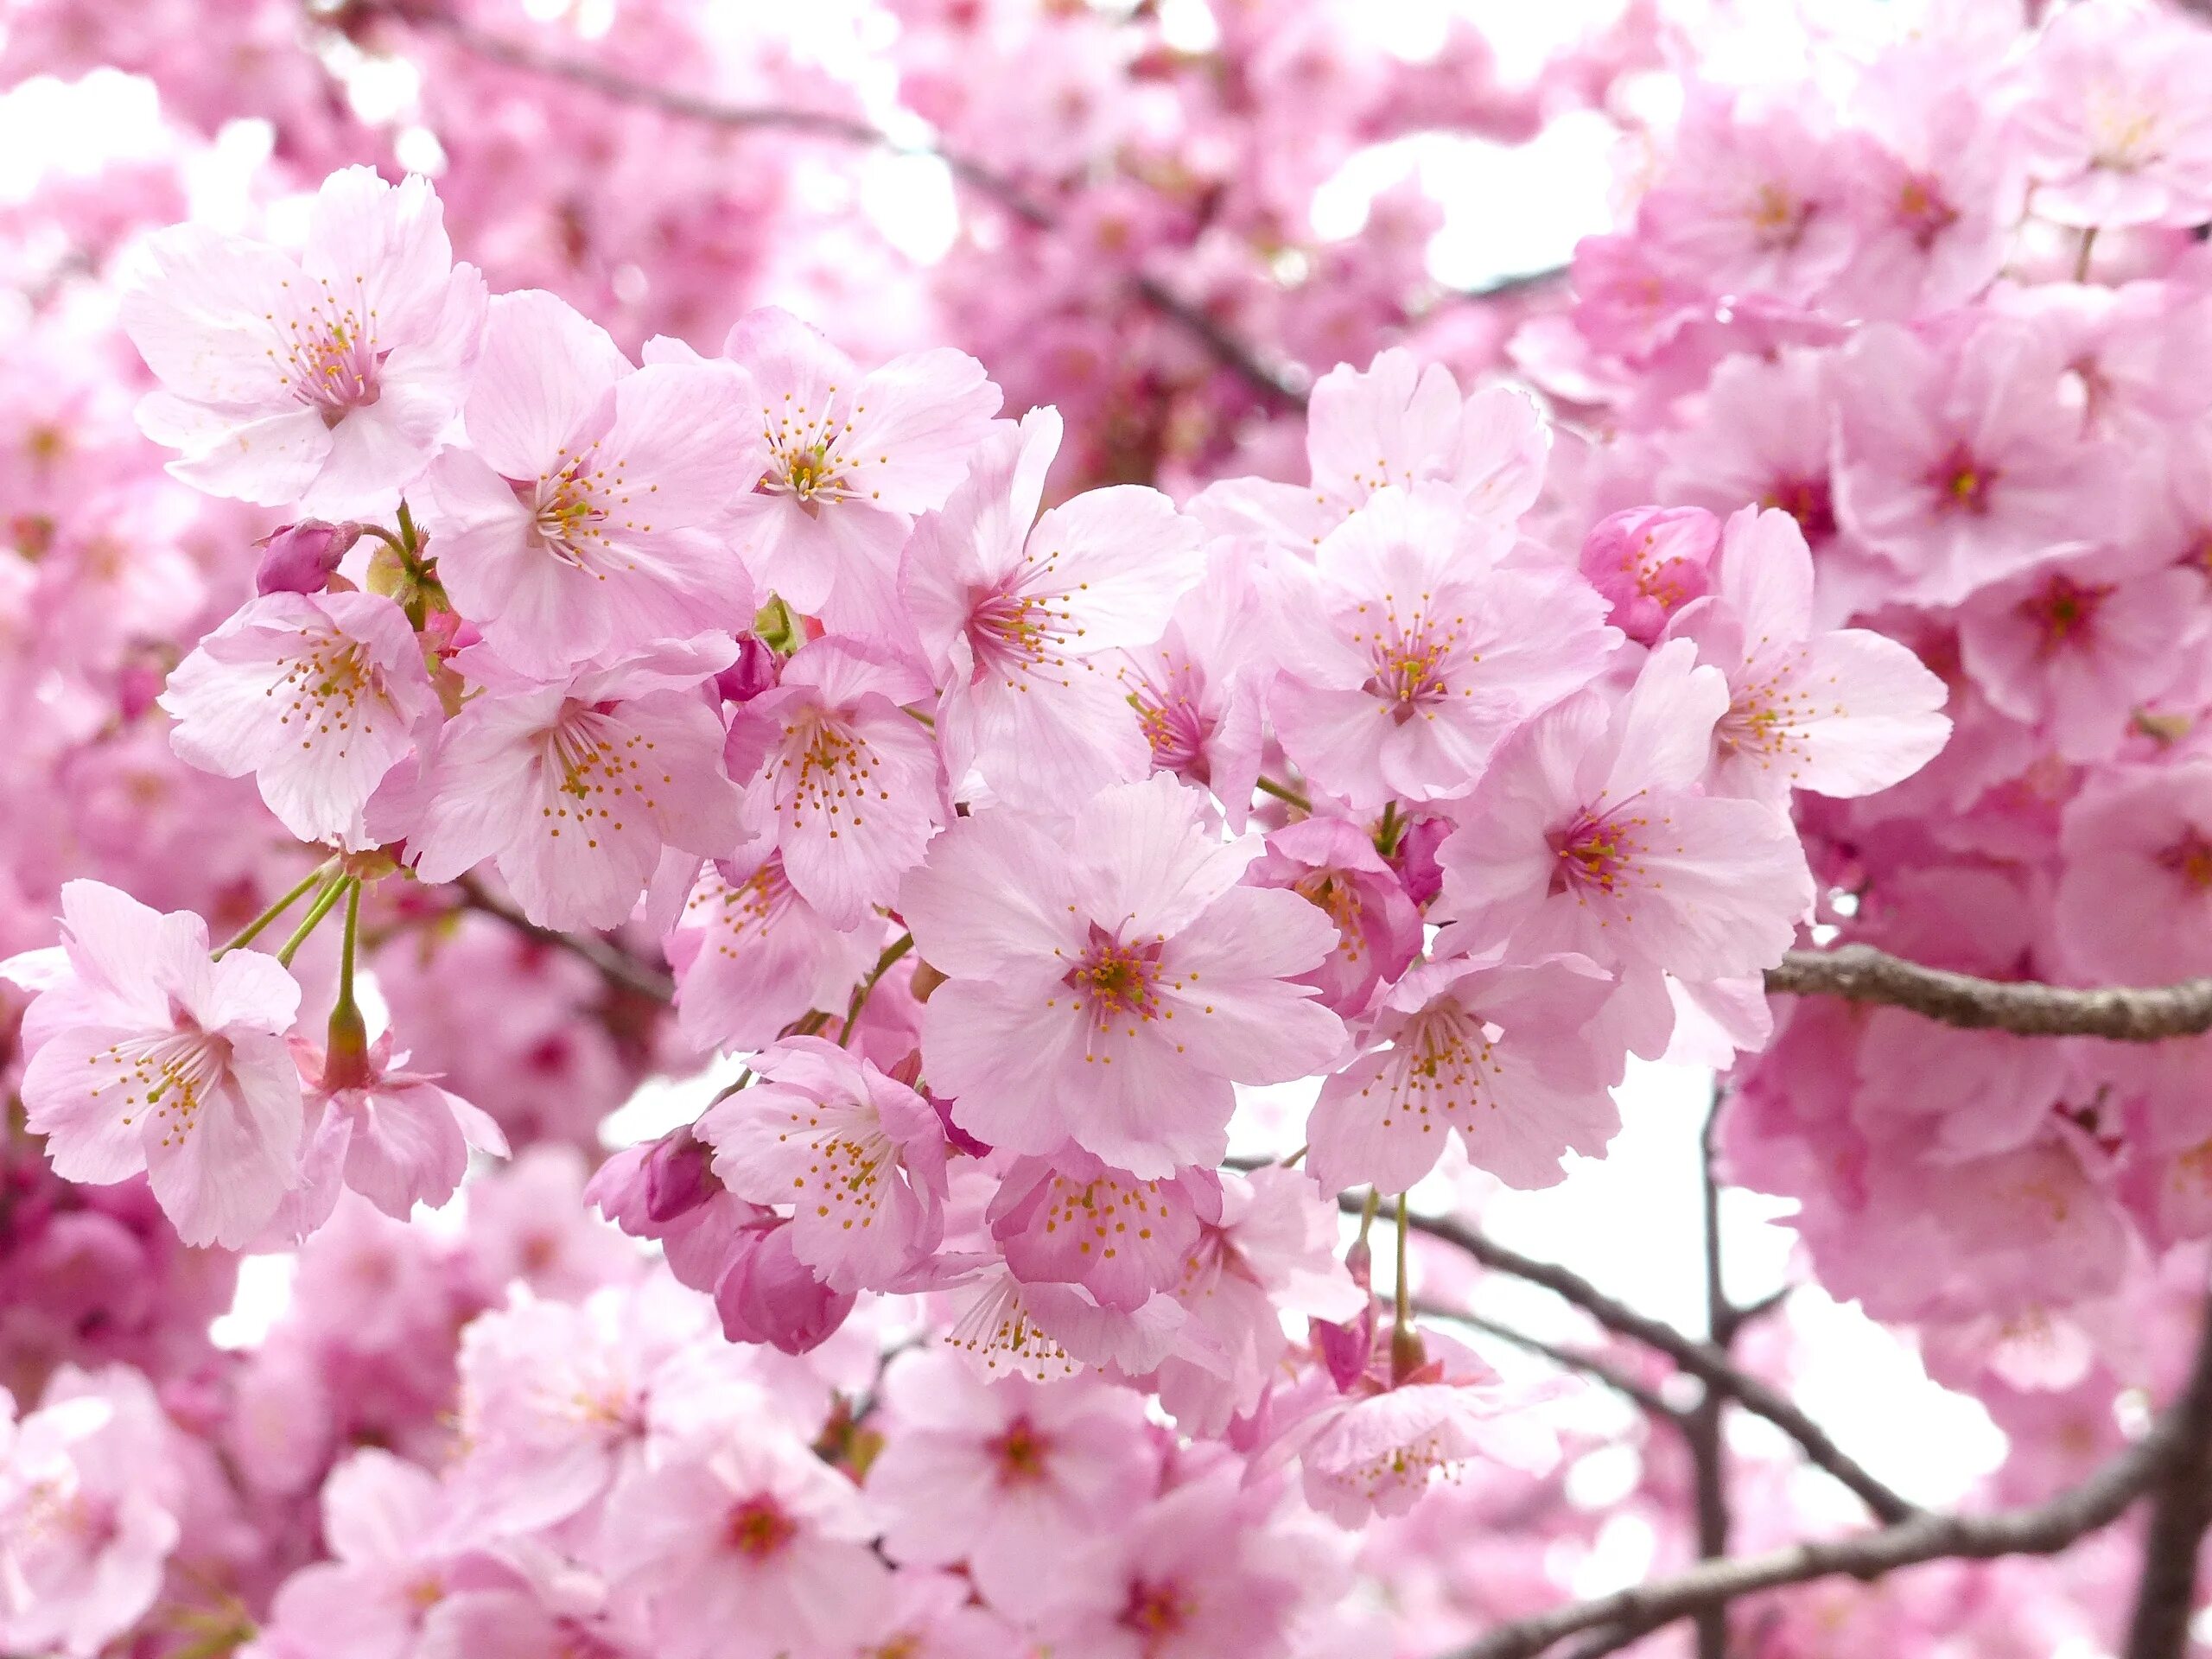 Japanese blossom. Черри блоссом дерево. Сакура черри блоссом дерево. Сакура японская вишня. Вишня черри блоссом.